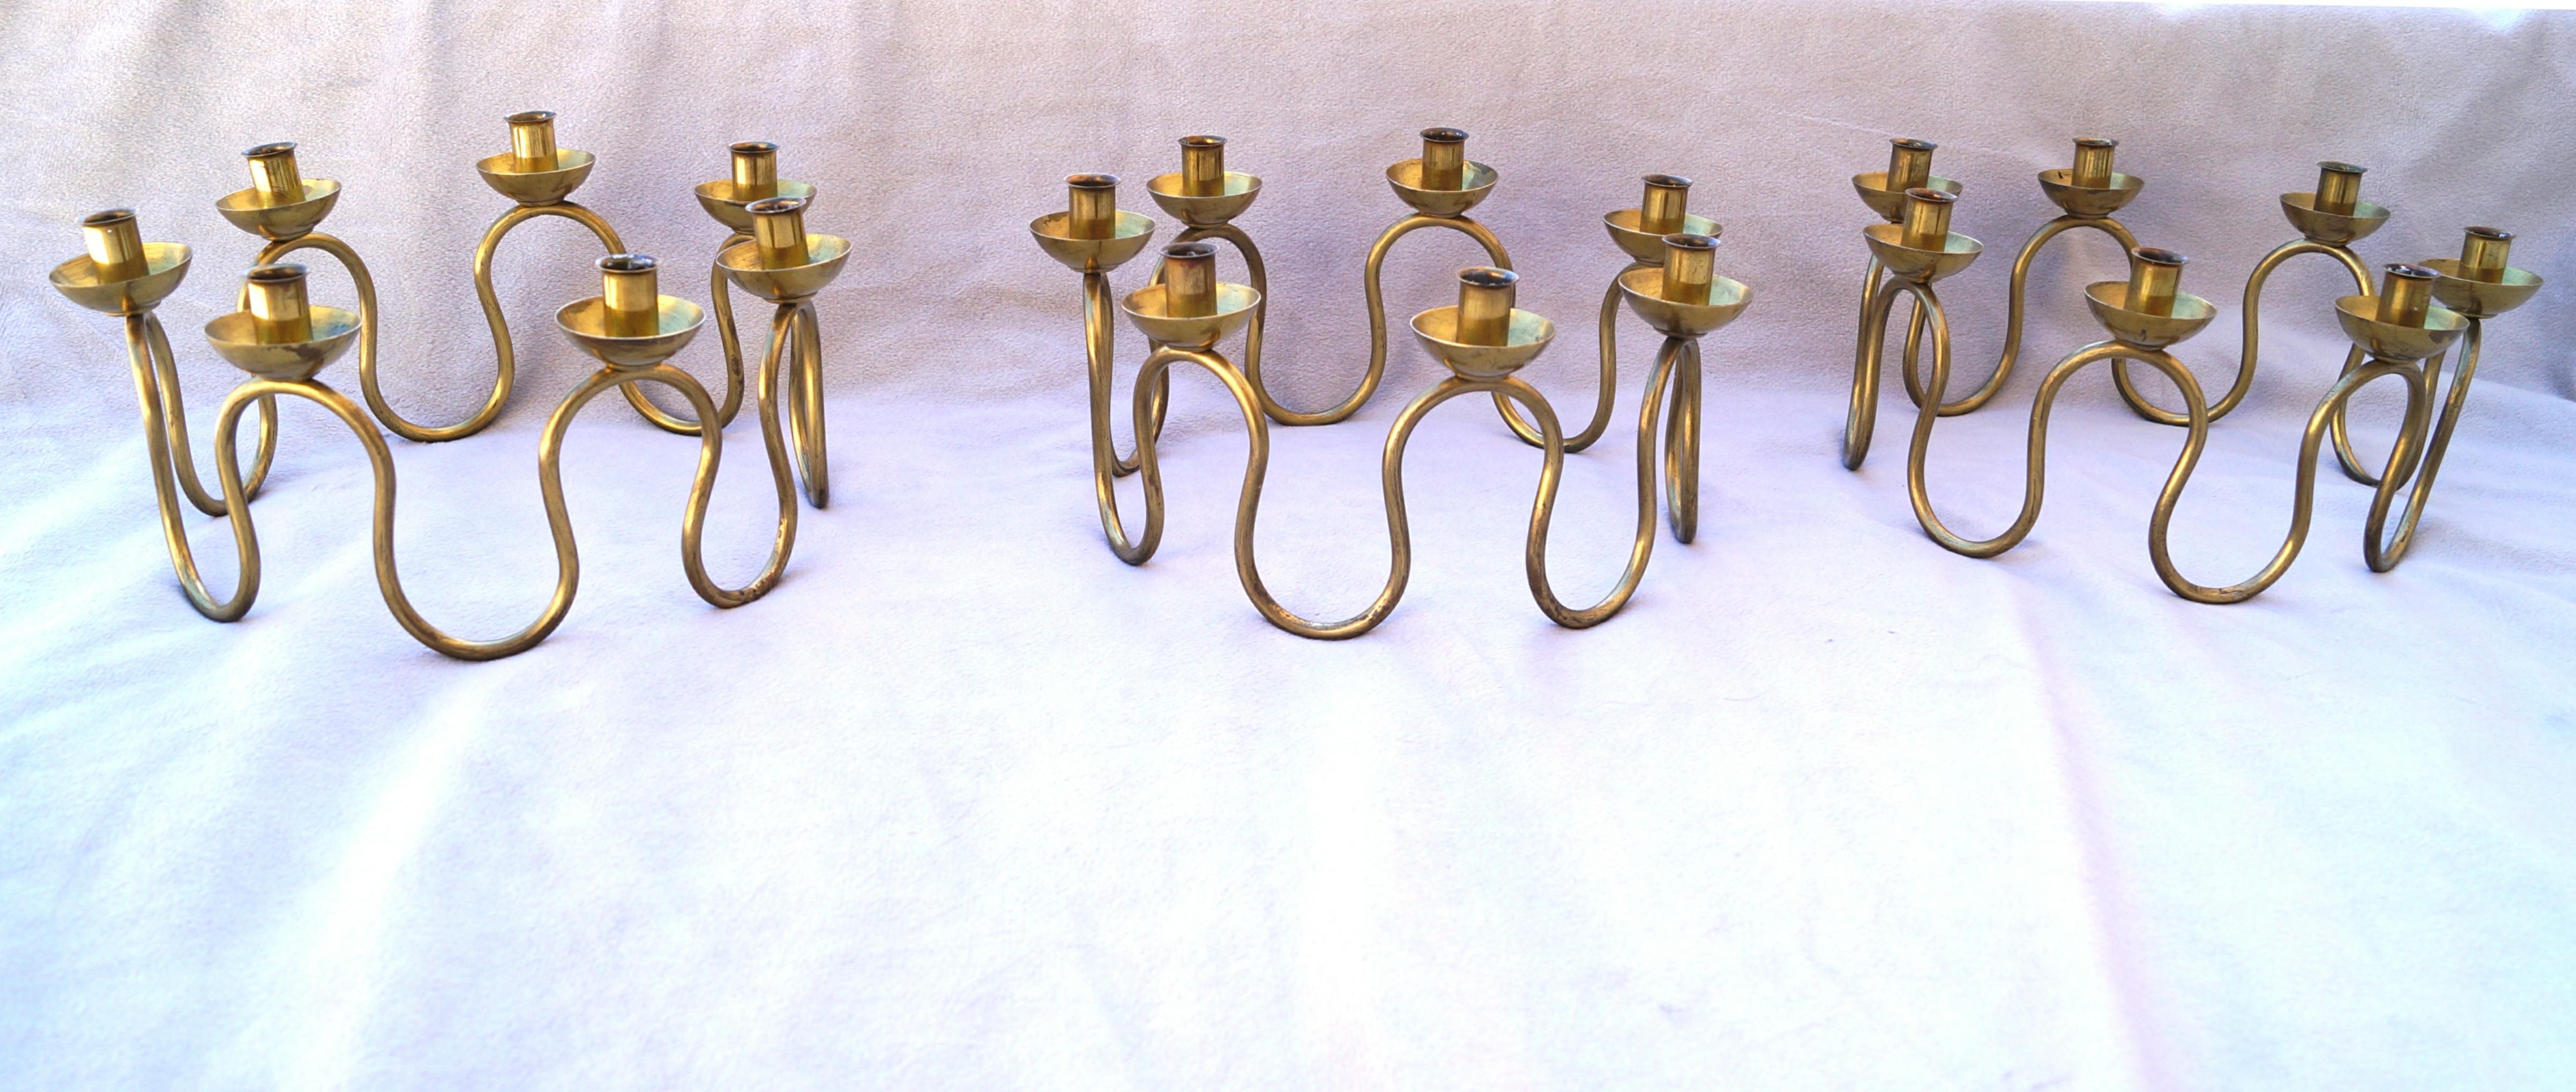 Dieses Set aus 3 Holmström-Kerzenhaltern ist eine schöne Ergänzung für jede  Dekoration, insbesondere während der schwedischen Tradition der Lucia. Hergestellt von Lars Holmström in Arvika. Diese Kerzenständer sind aus Messing mit abgerundeten